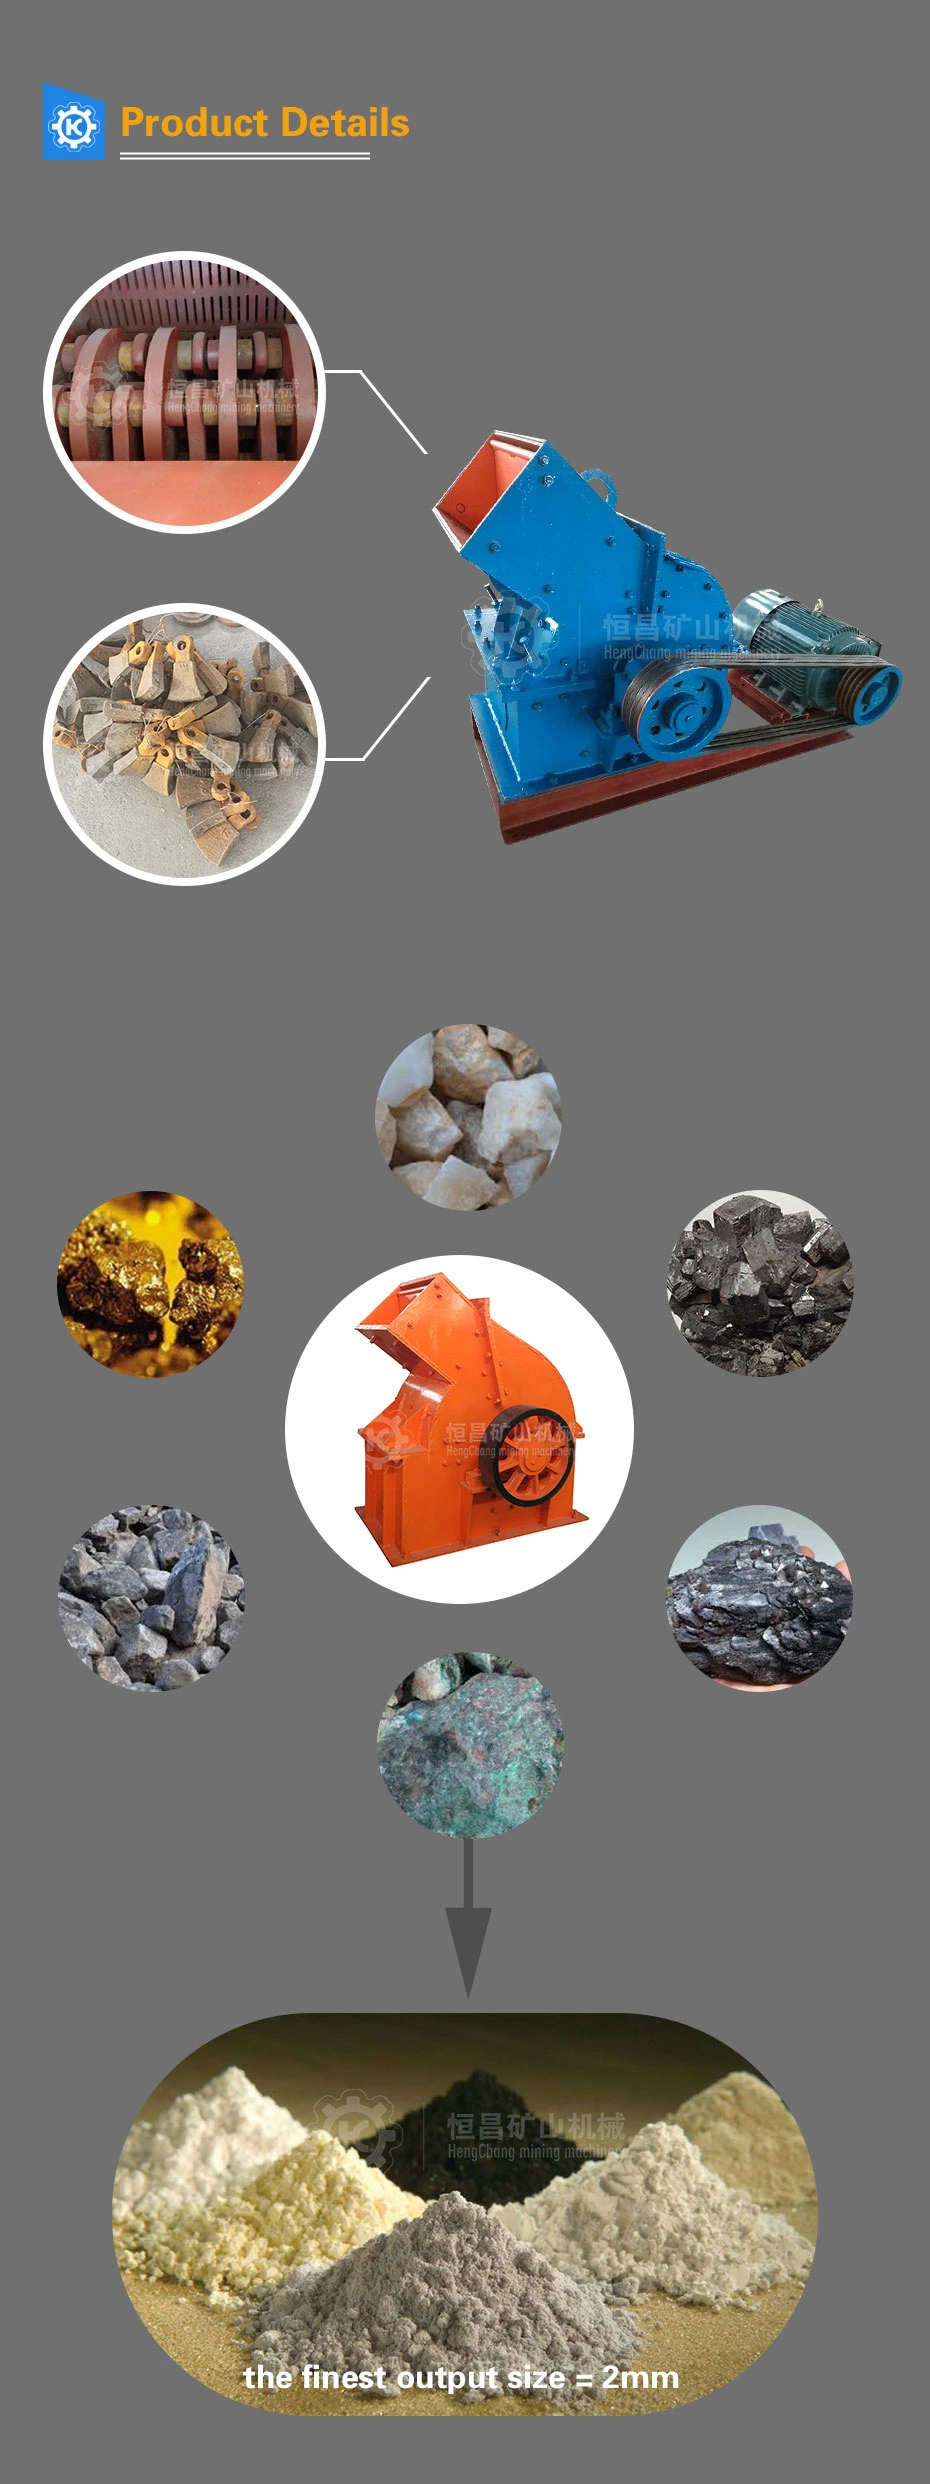 Secondary and Tertiary Crusher Hammer Crusher for Stone, Minerals Crushing Rock Crusher